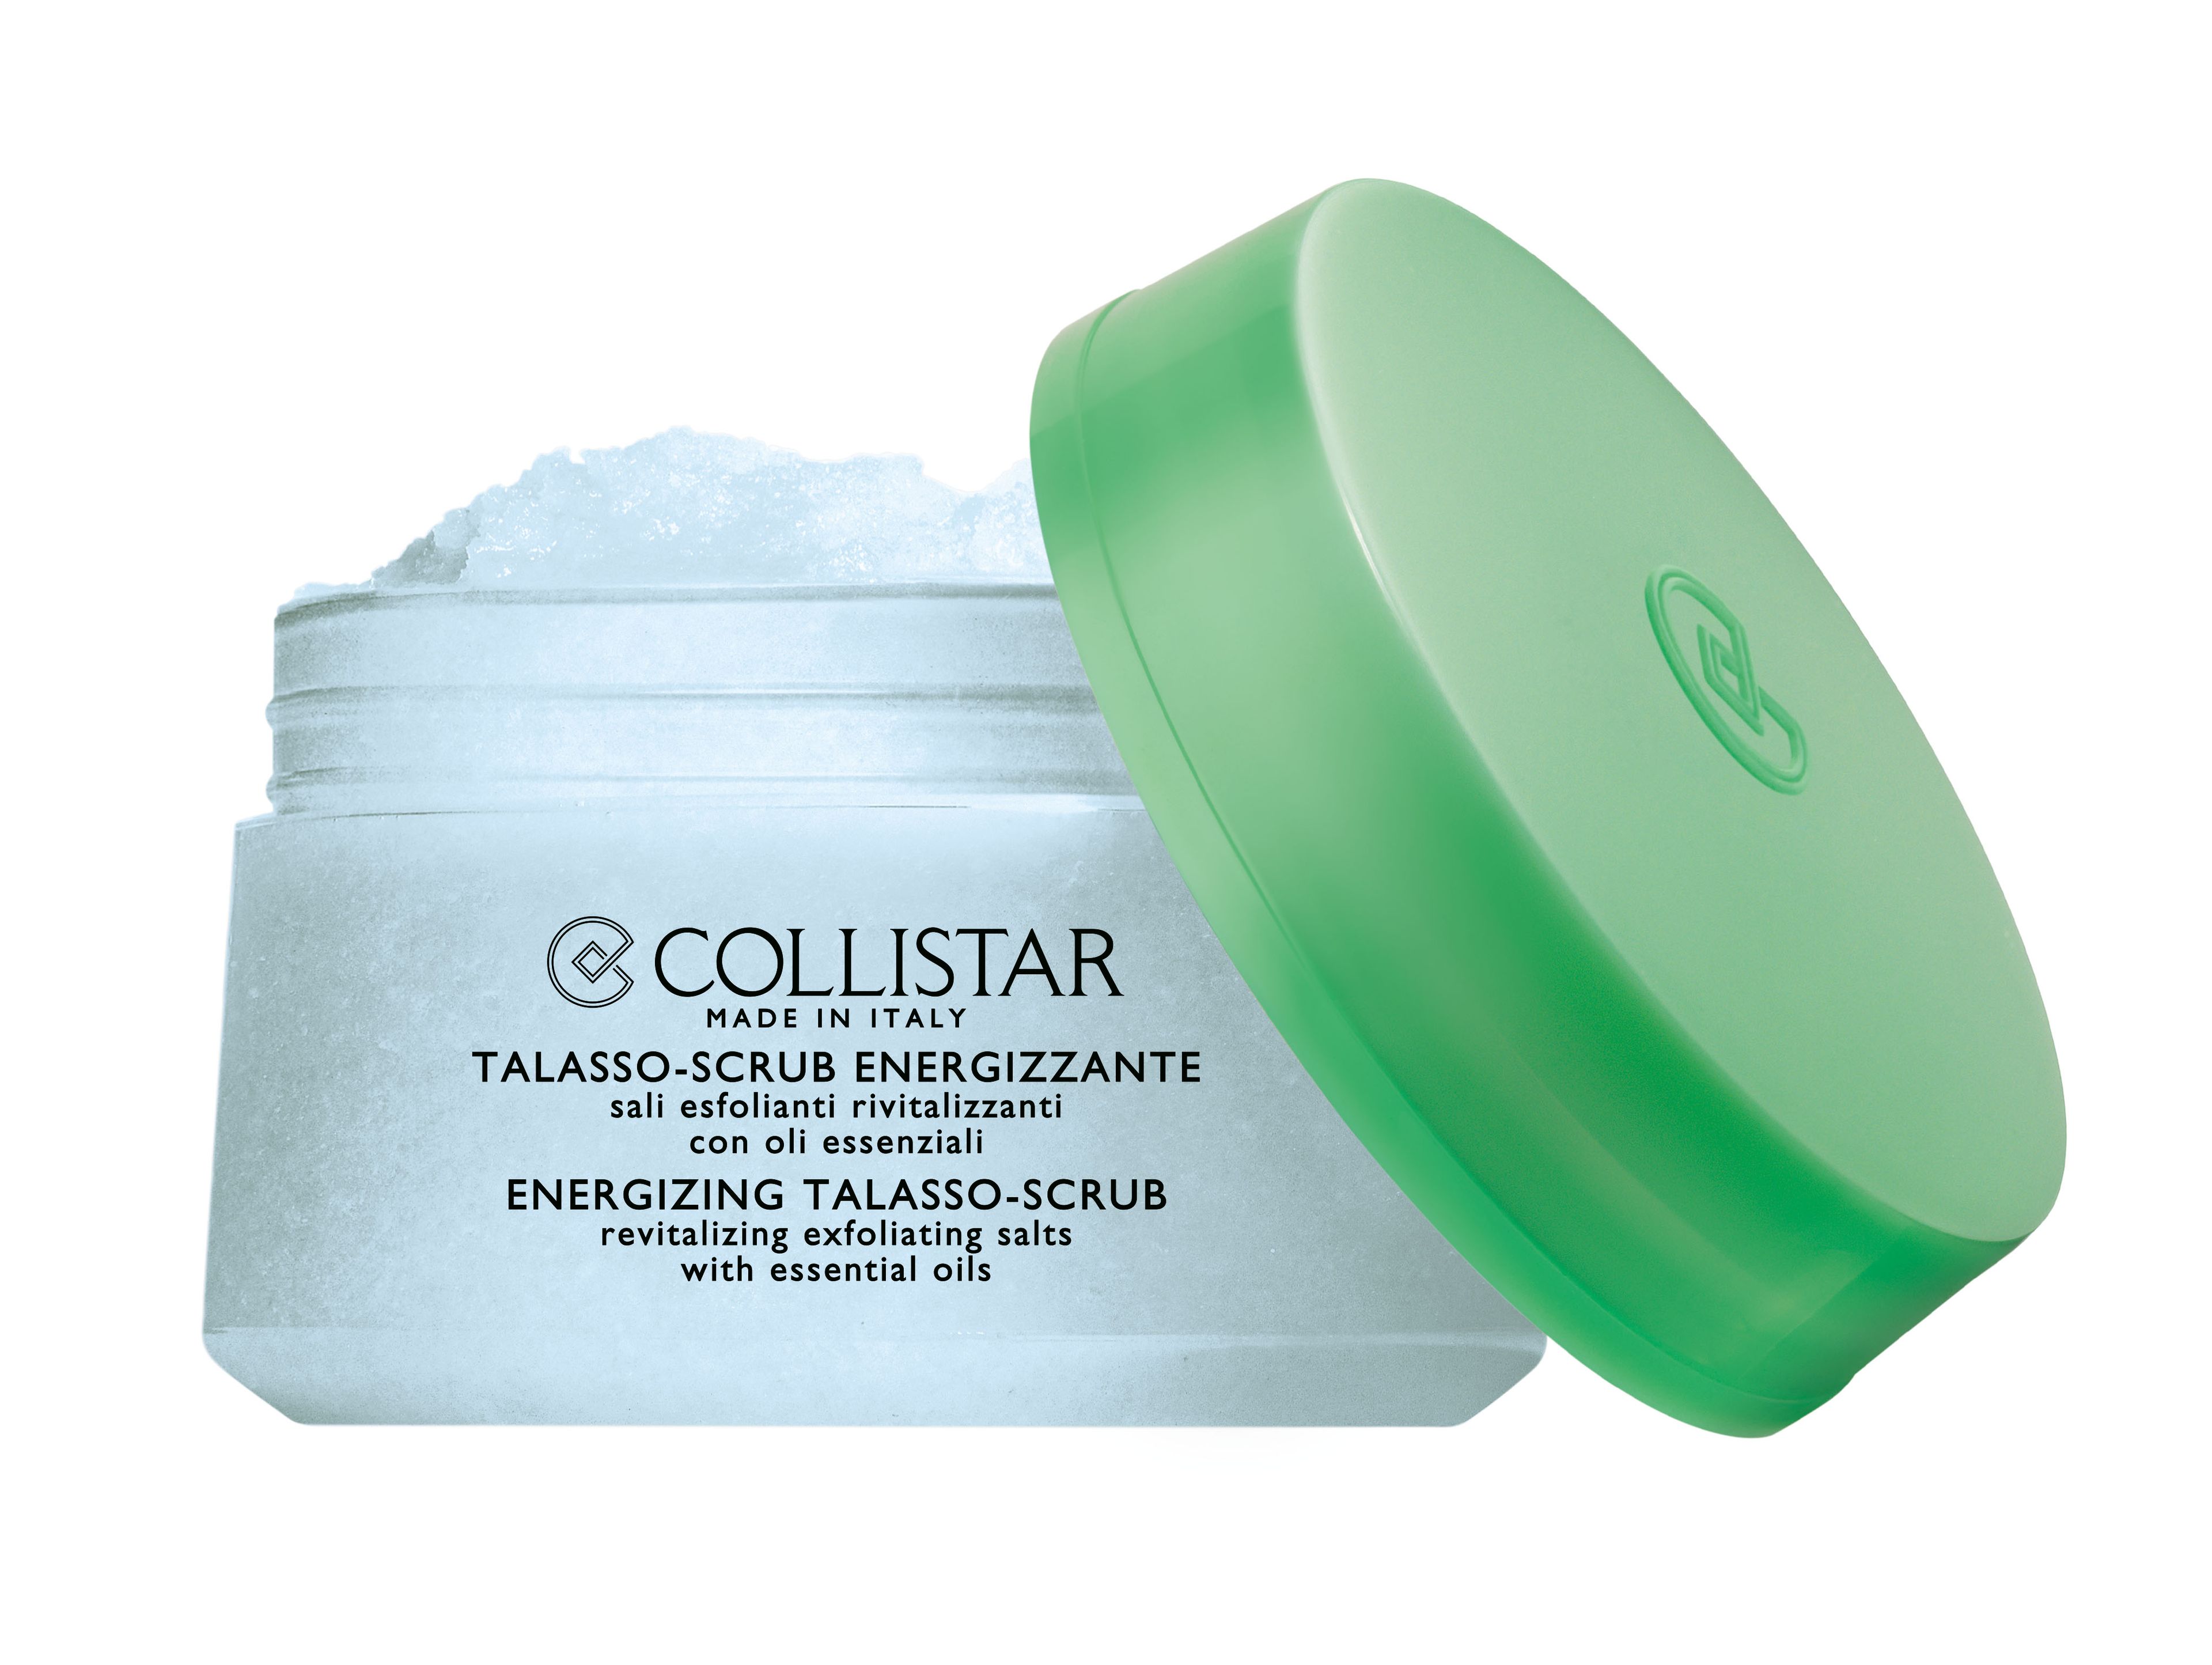 Collistar Talasso-scrub Energizzante 1